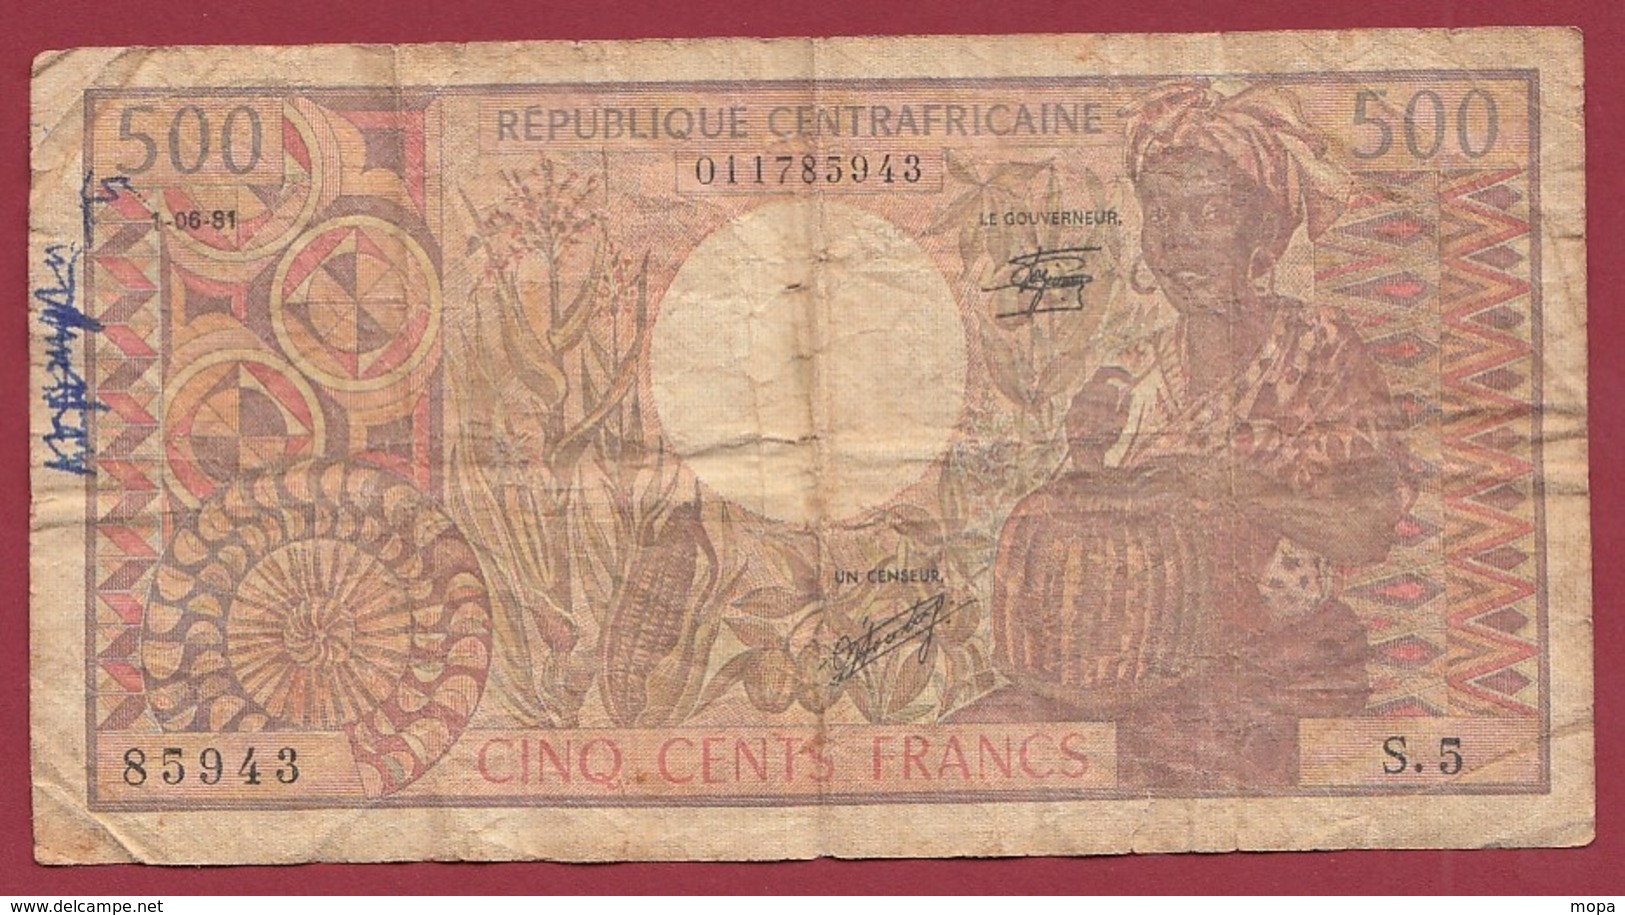 Centrafricaine 500 Francs Du 01/06/1981 Dans L 'état (240) - Central African Republic